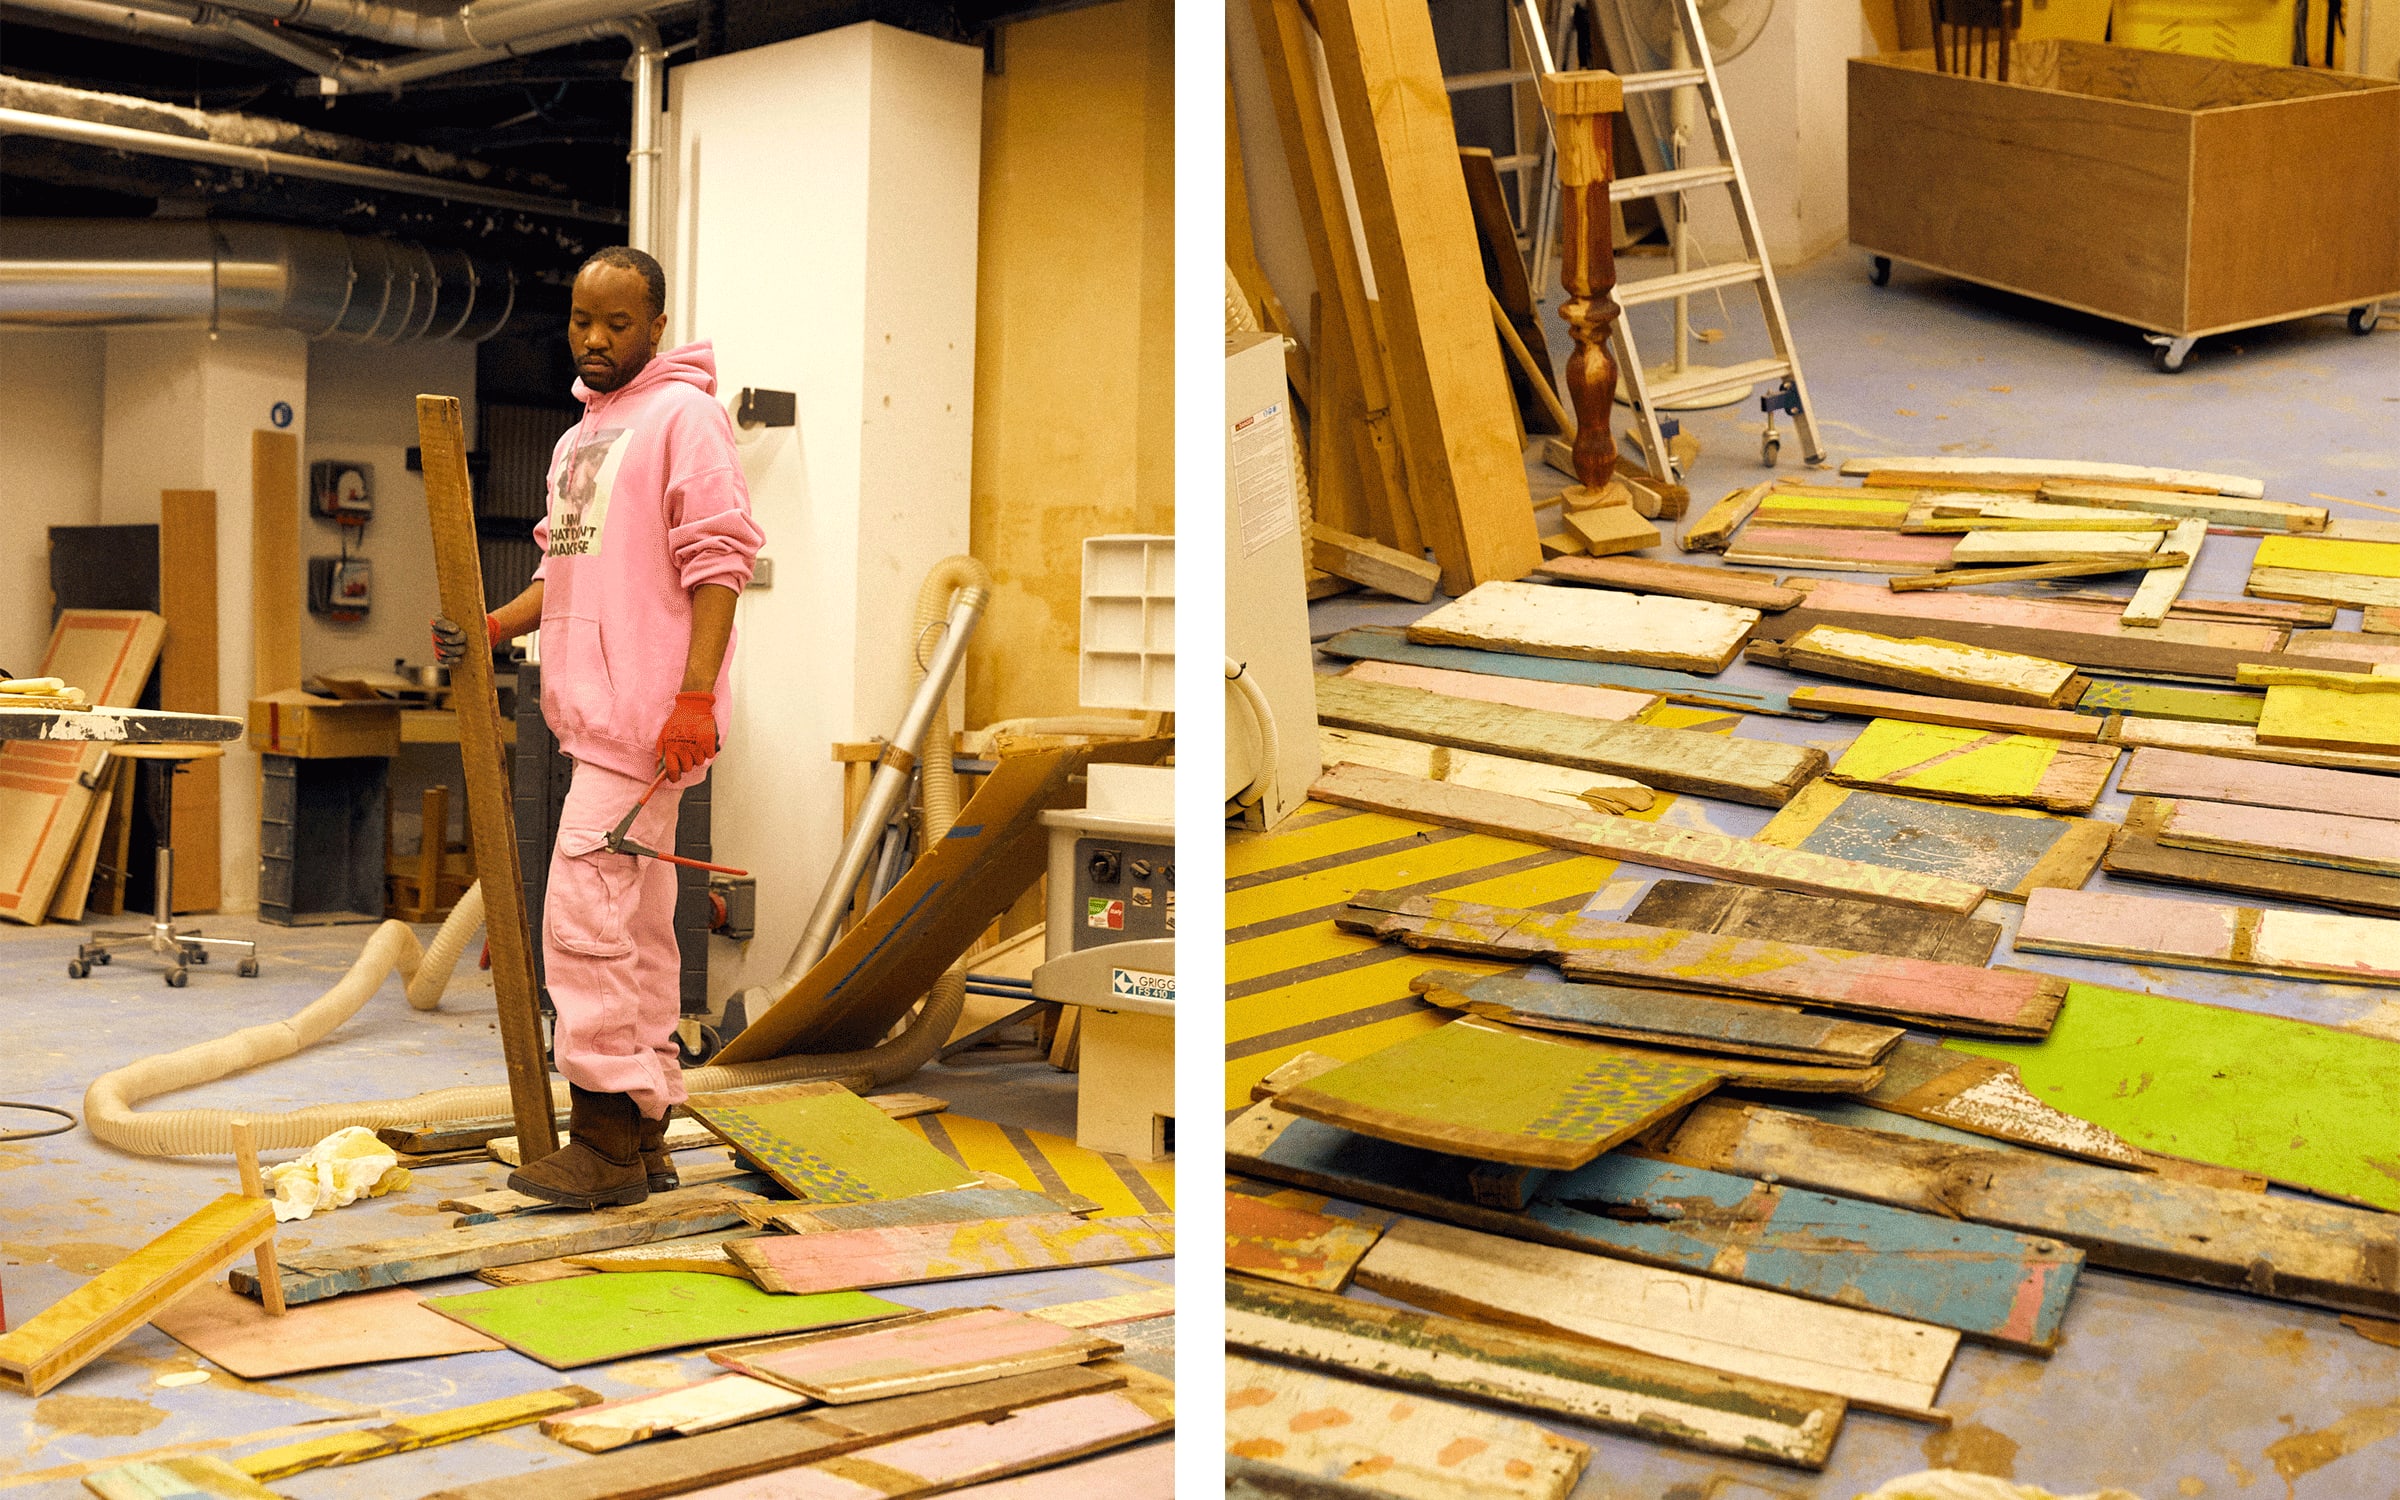 Akeem Smith dans son studio à Paris. Photographies de Mathieu Richer Mamousse pour Art Basel.